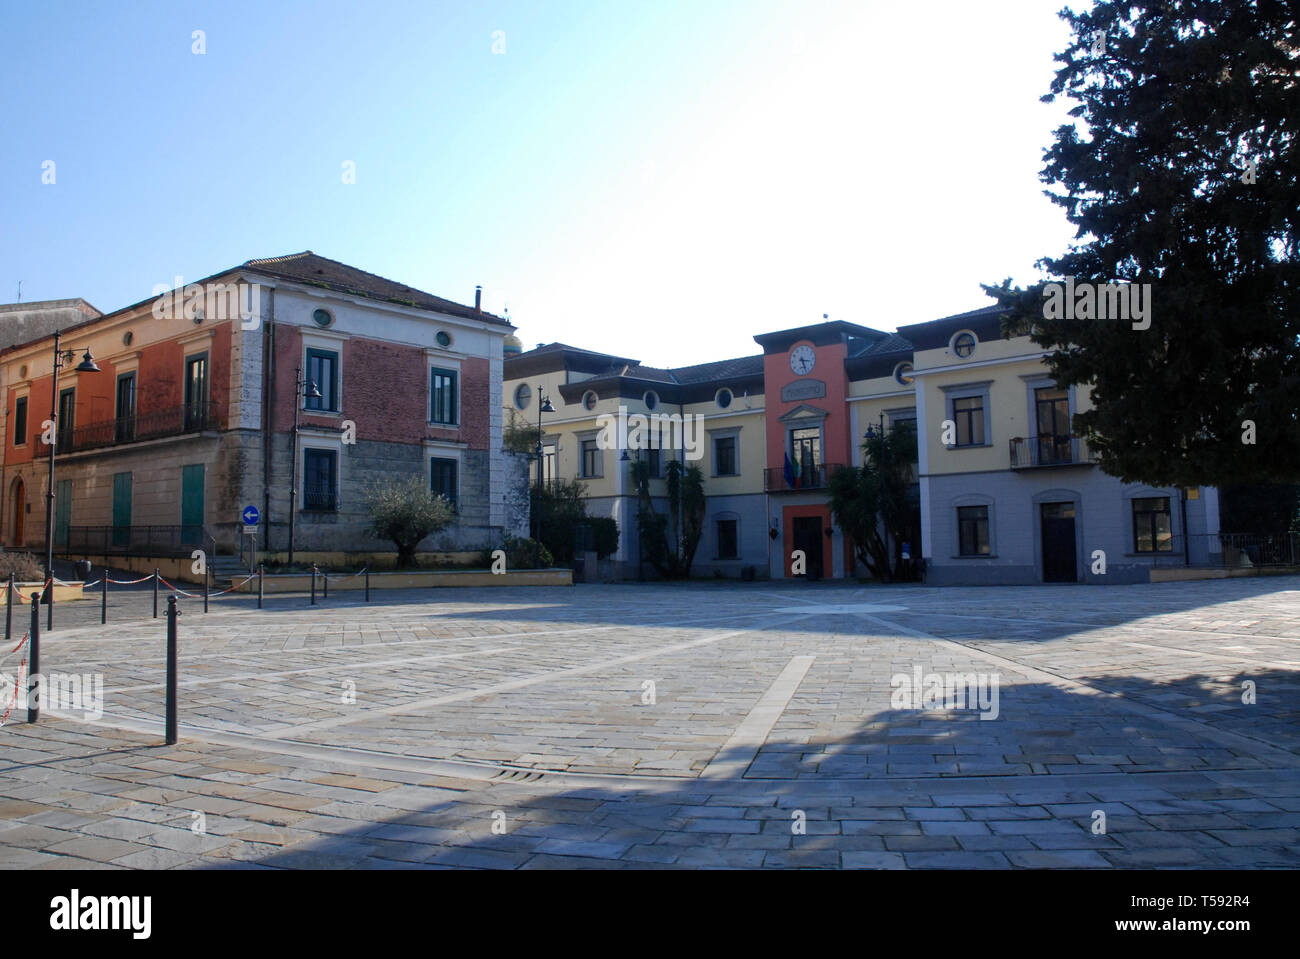 Italy : Urban landscape in Giffoni Sei Casali, February 16, 2019. Stock Photo